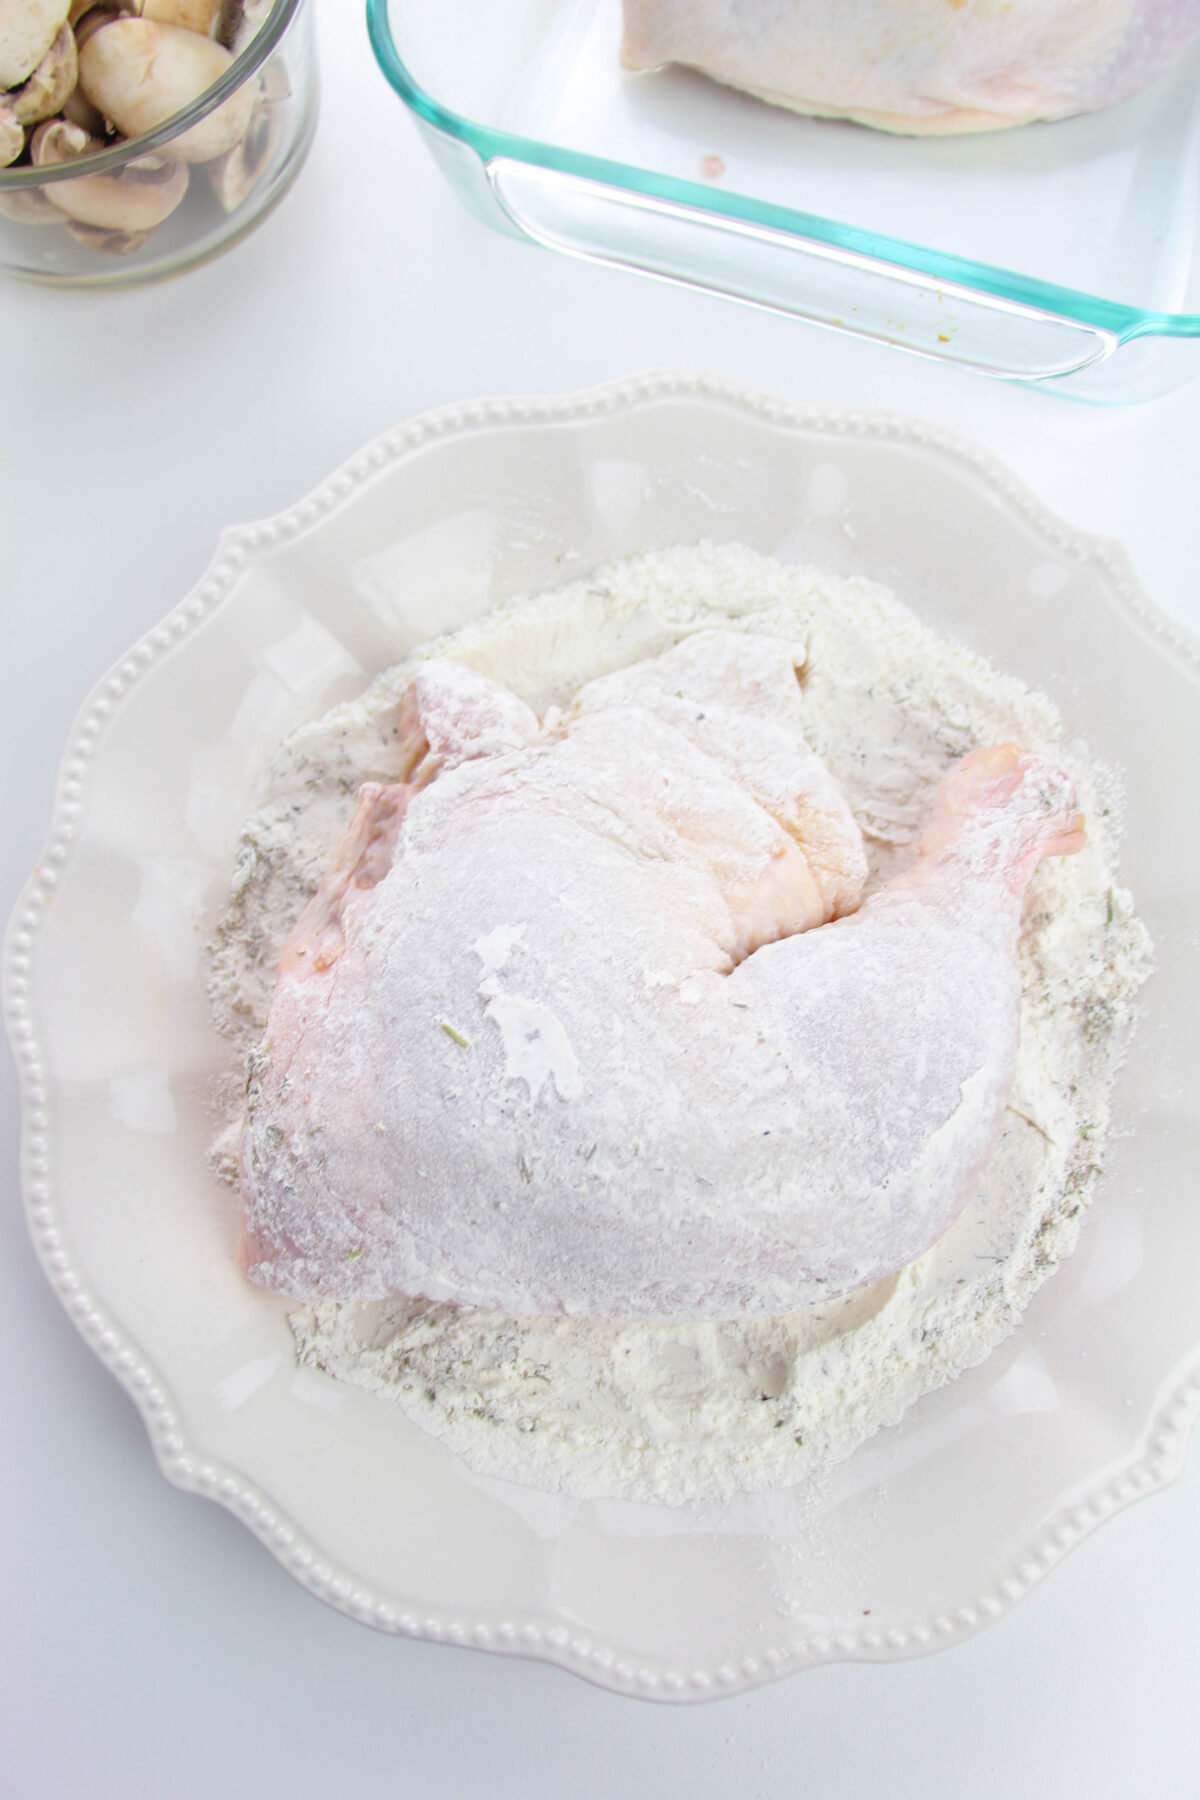 Dredging chicken in flour in a bowl.